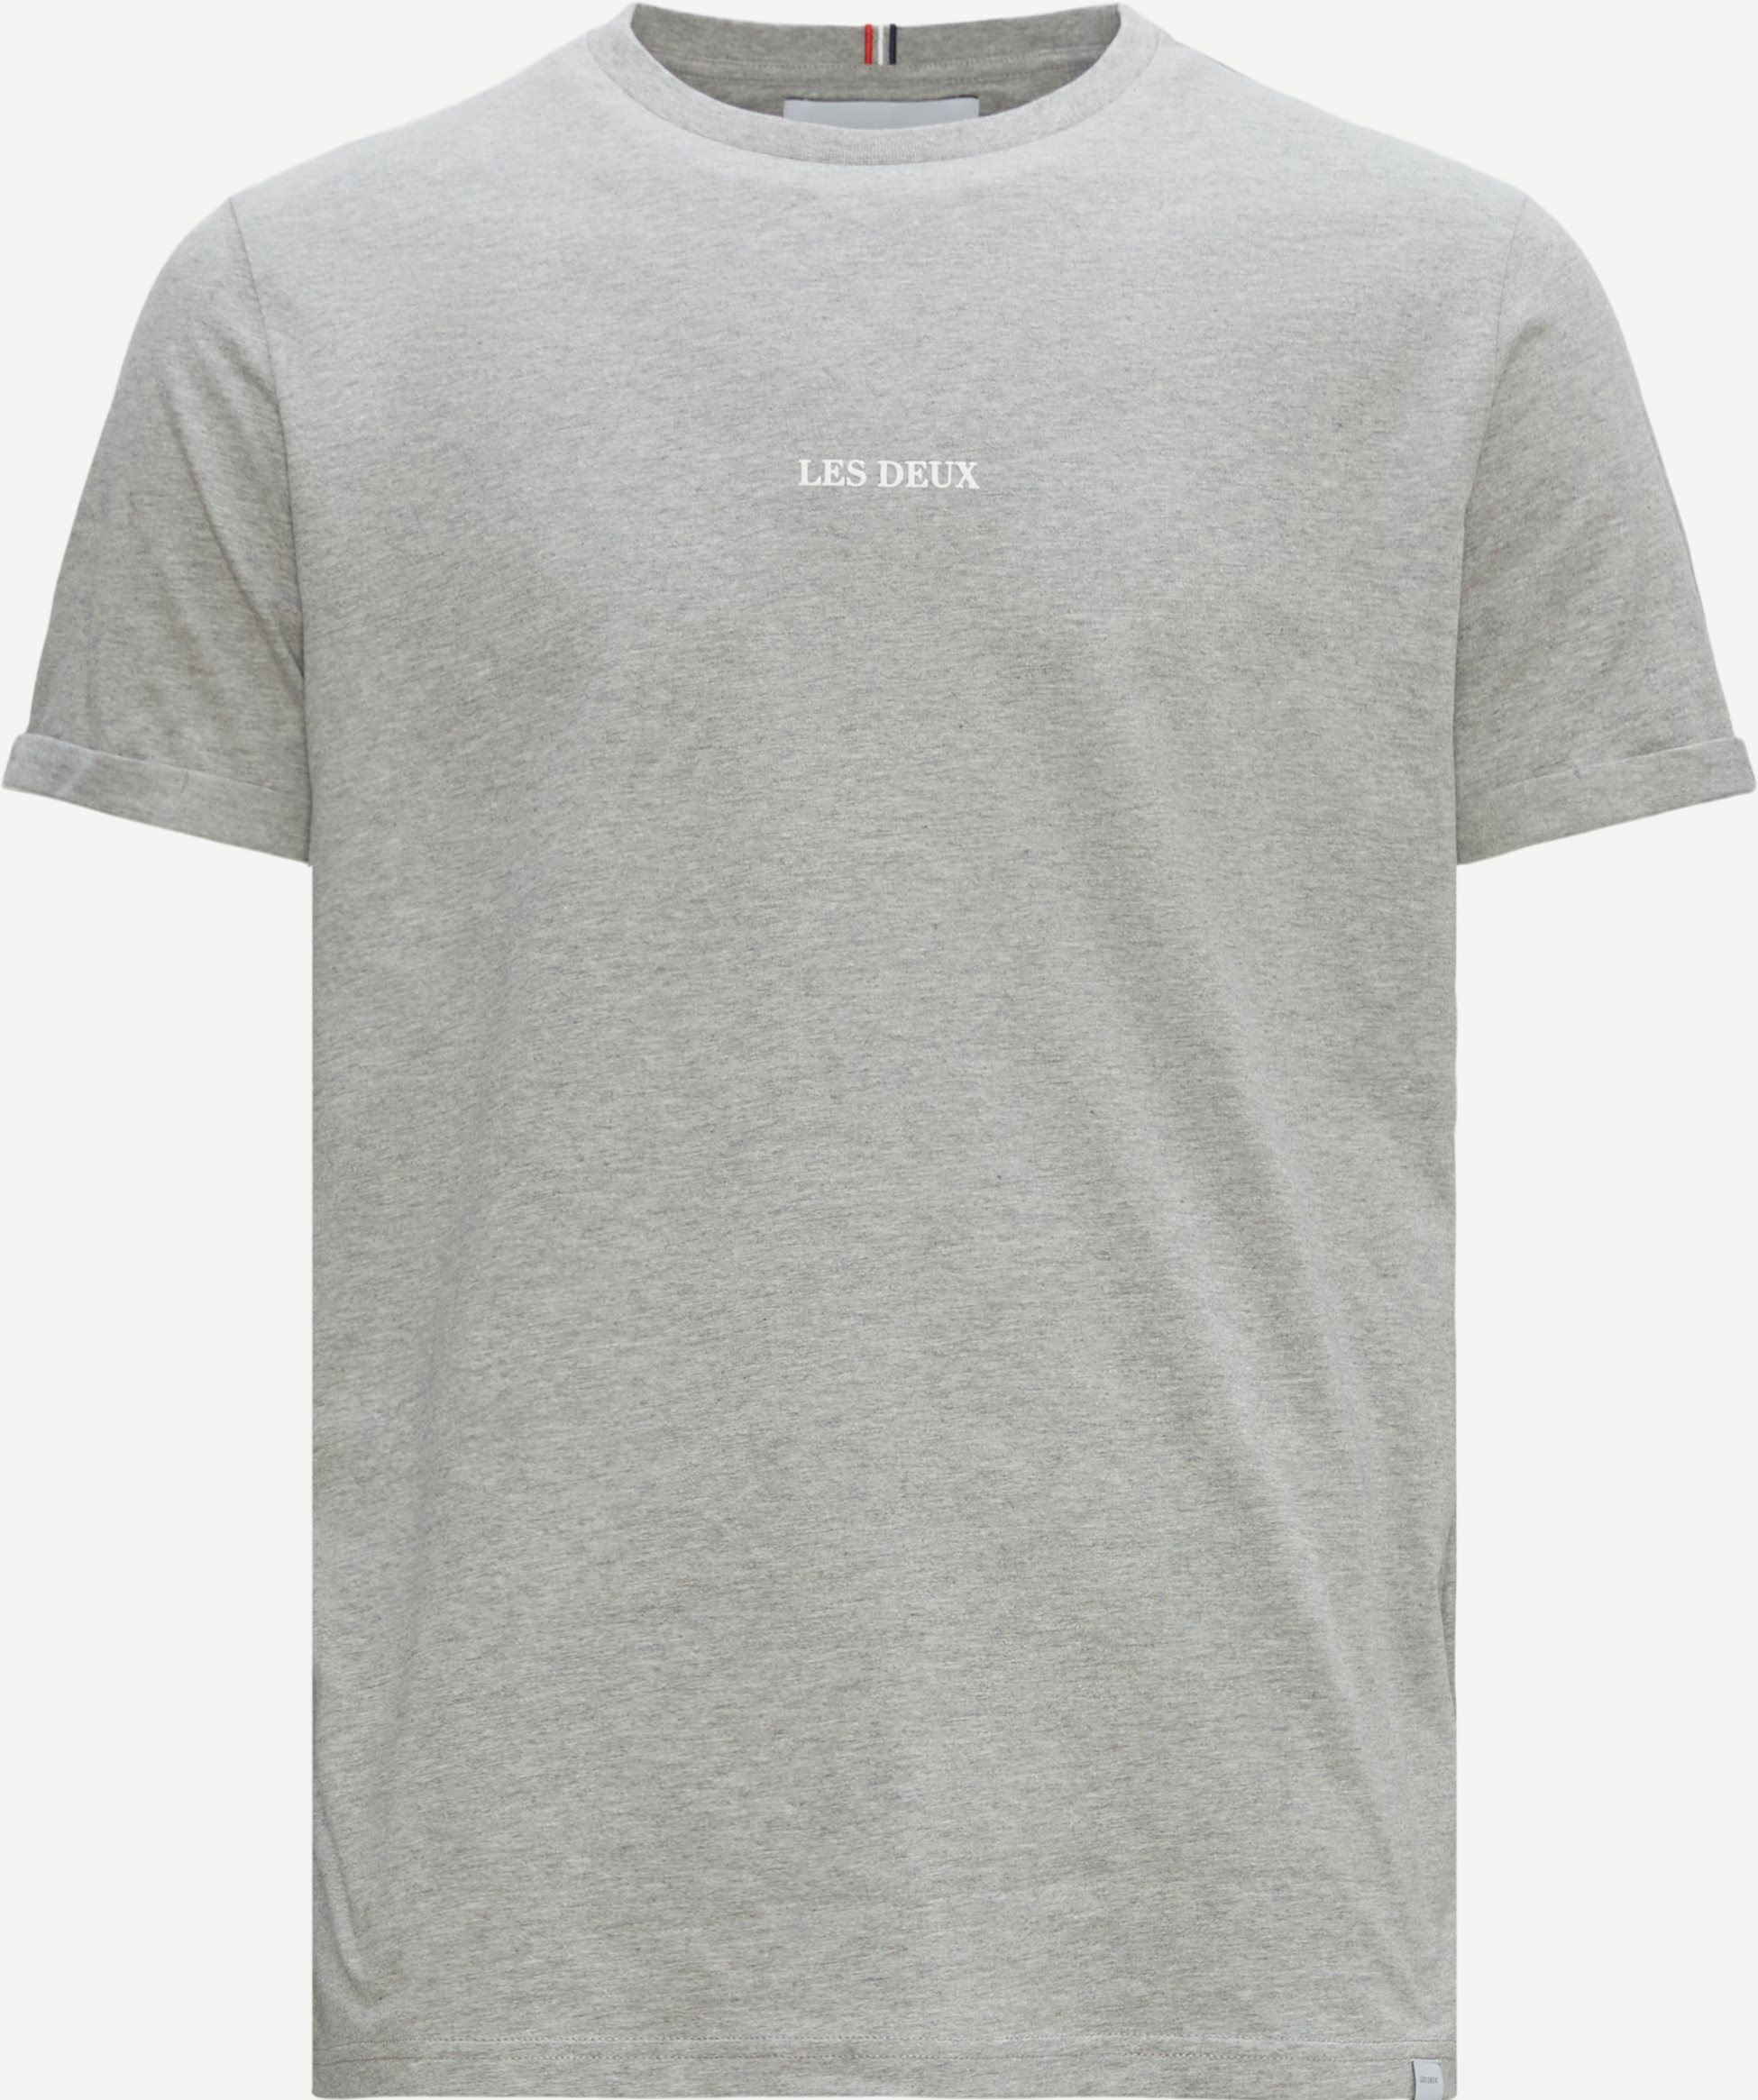 Lins T-shirt - T-shirts - Regular fit - Grå